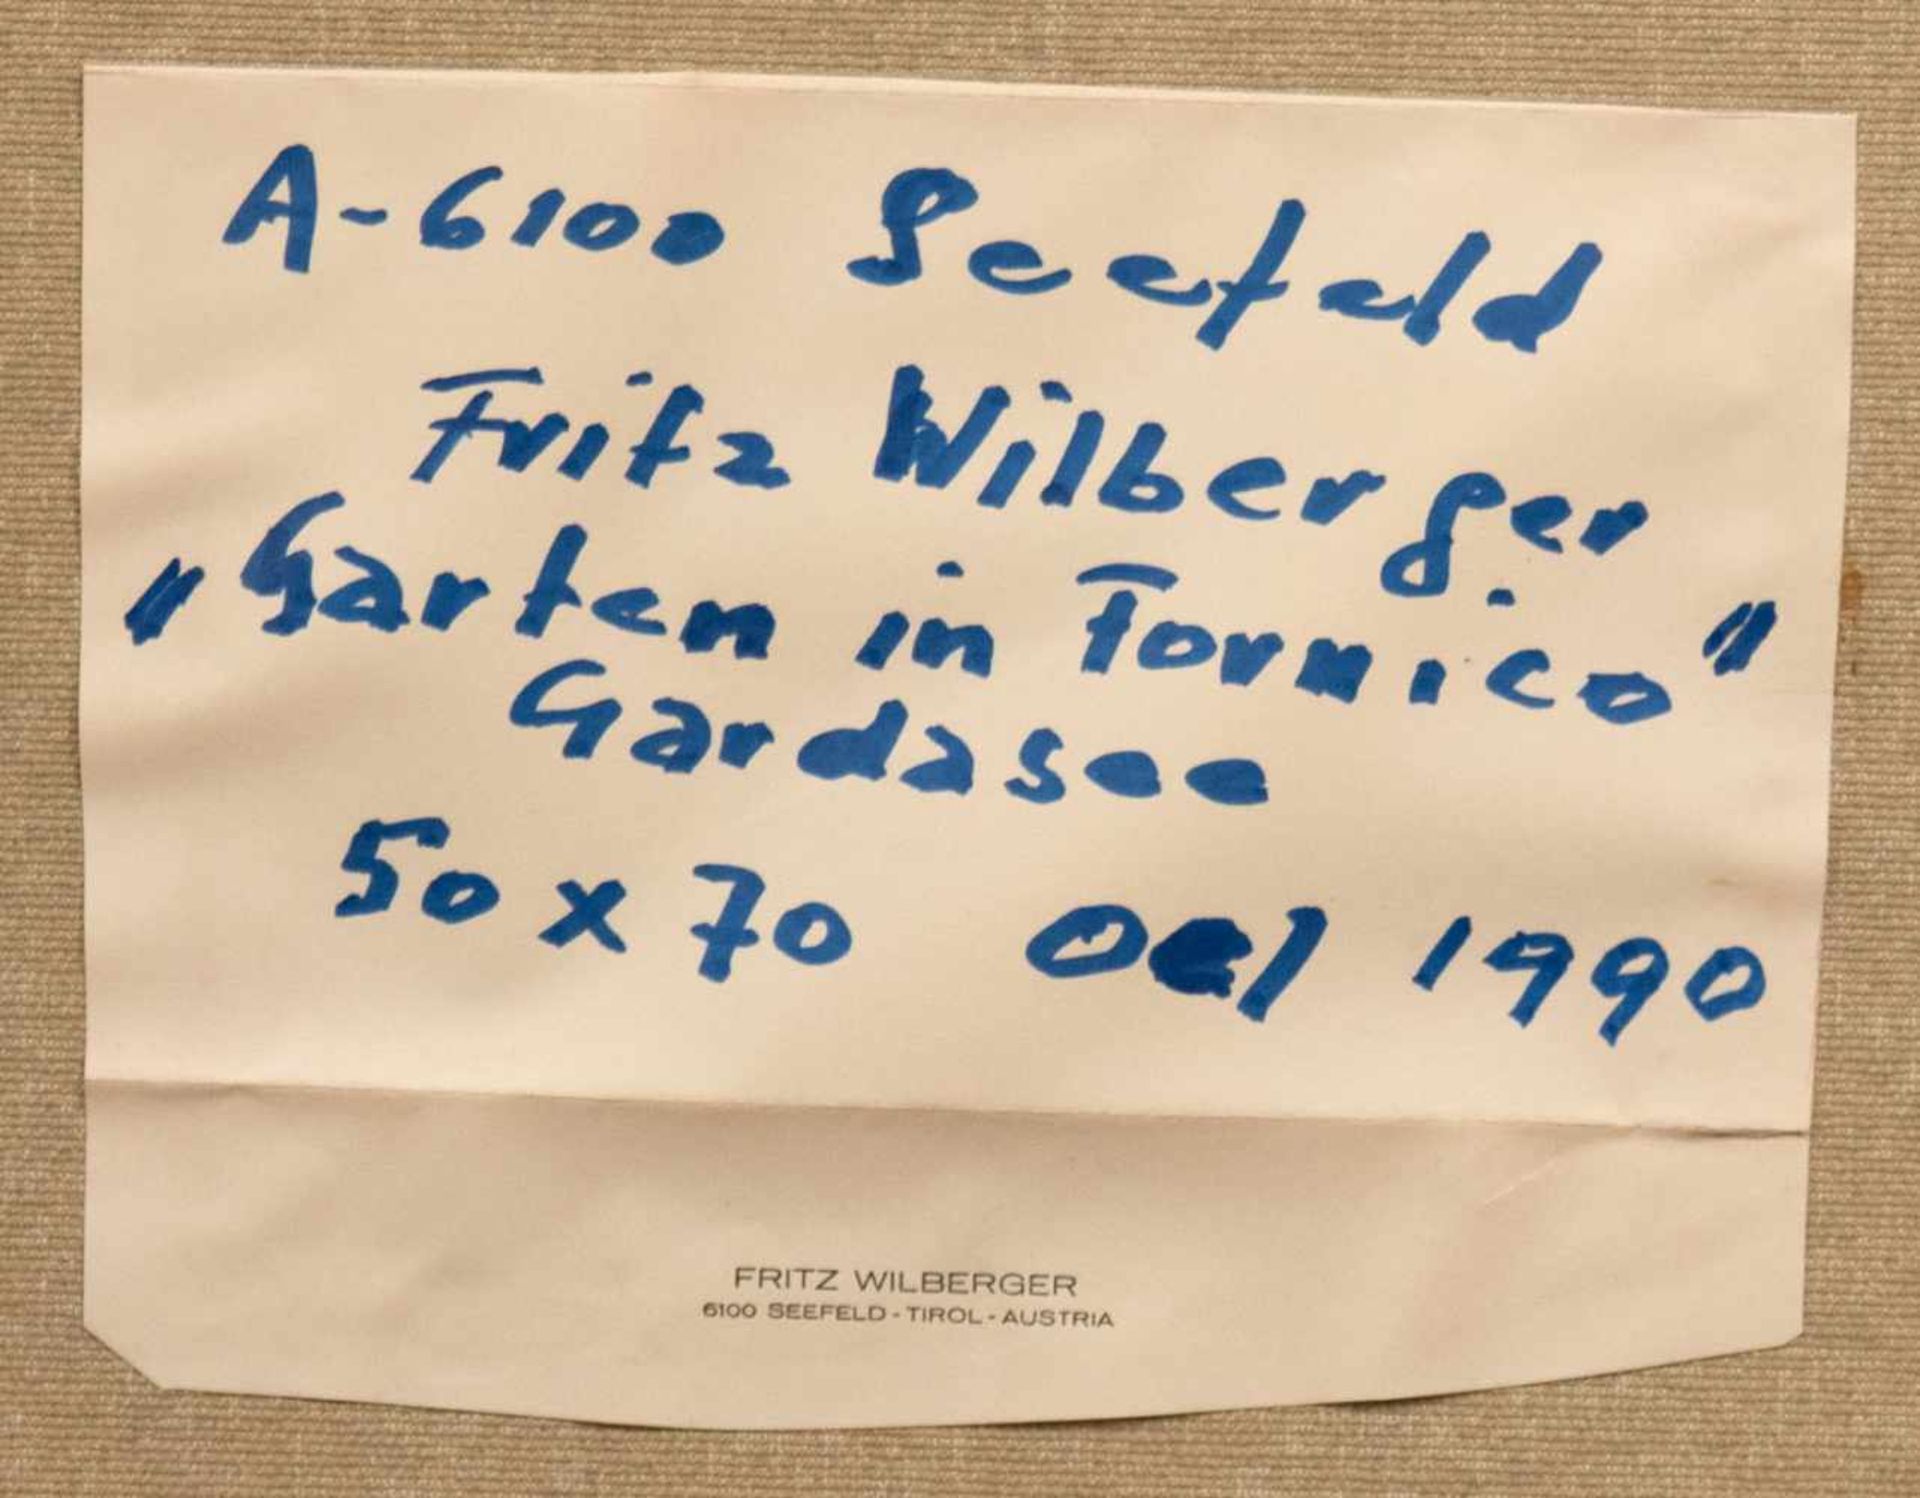 Wilberger, Fritz "Garten in Fornico Gardasee", Öl/Lw., sign. u.r. und dat. 1990, 51x70 cm, - Bild 4 aus 5